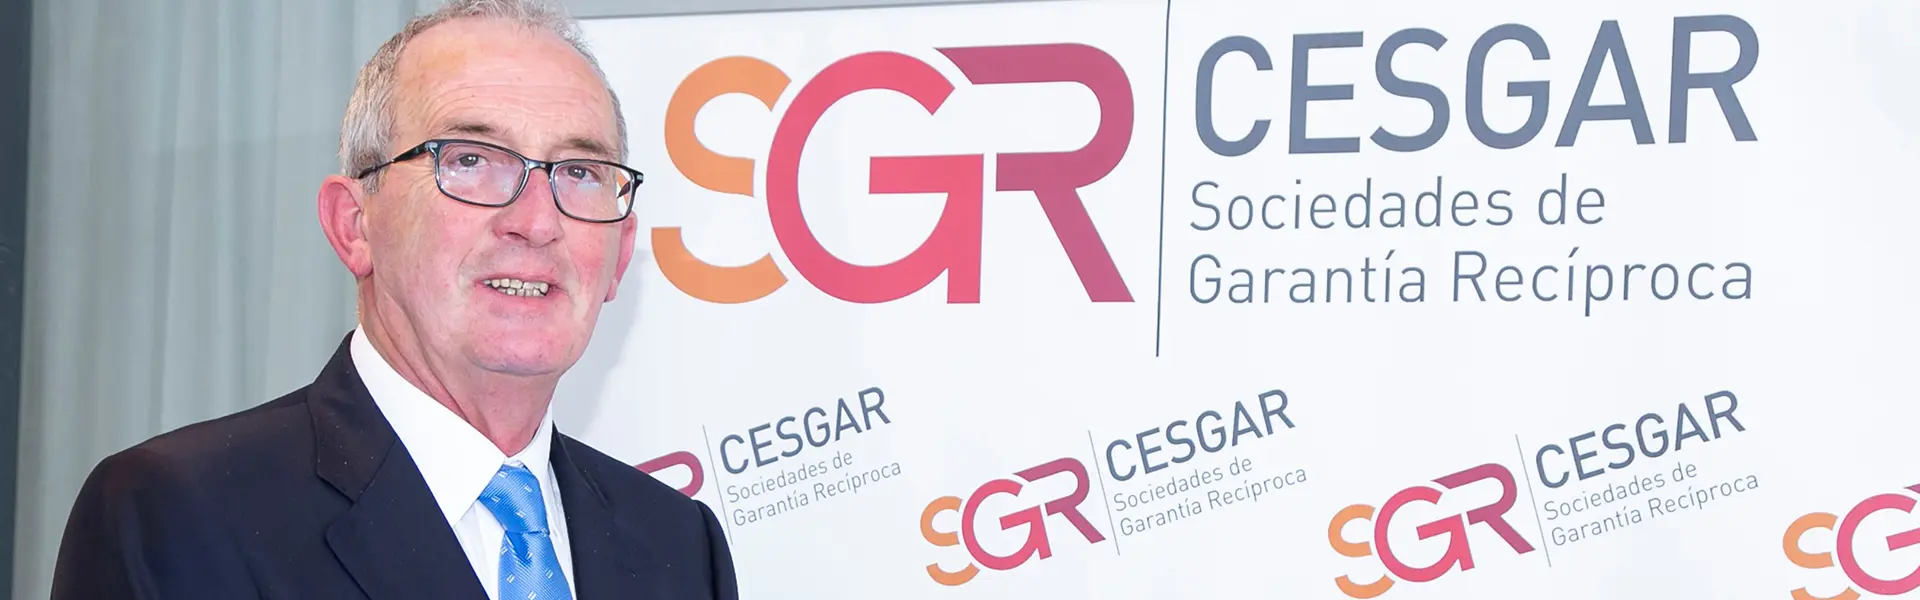 Jose Pedro Salcedo Herce presidente de Cesgar y de Sonagar premiado por su trayectoria empresarial ultimas noticias cesgar web